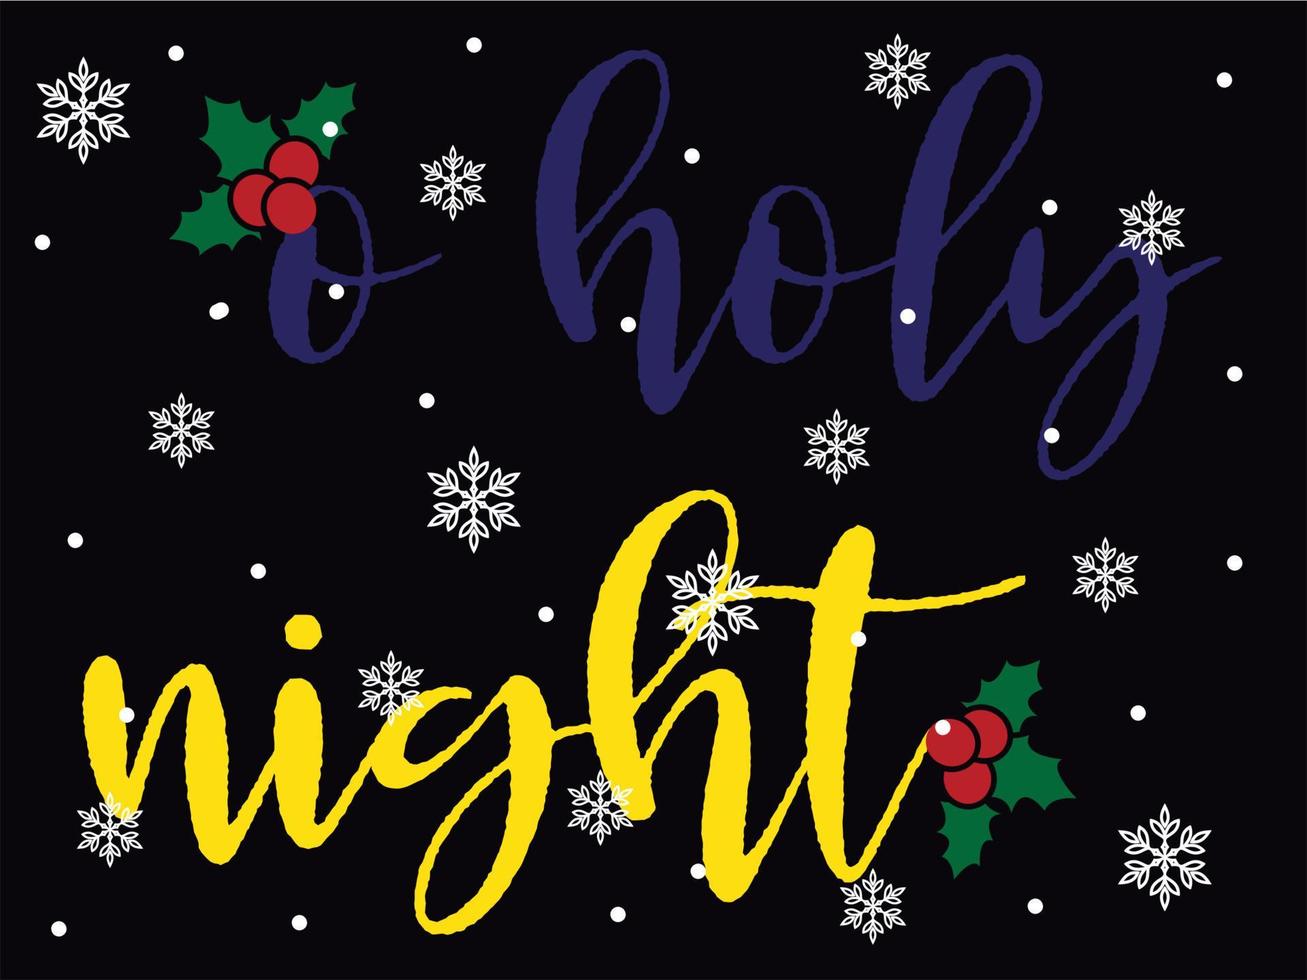 O heilig nacht 01 vrolijk Kerstmis en gelukkig vakantie typografie reeks vector